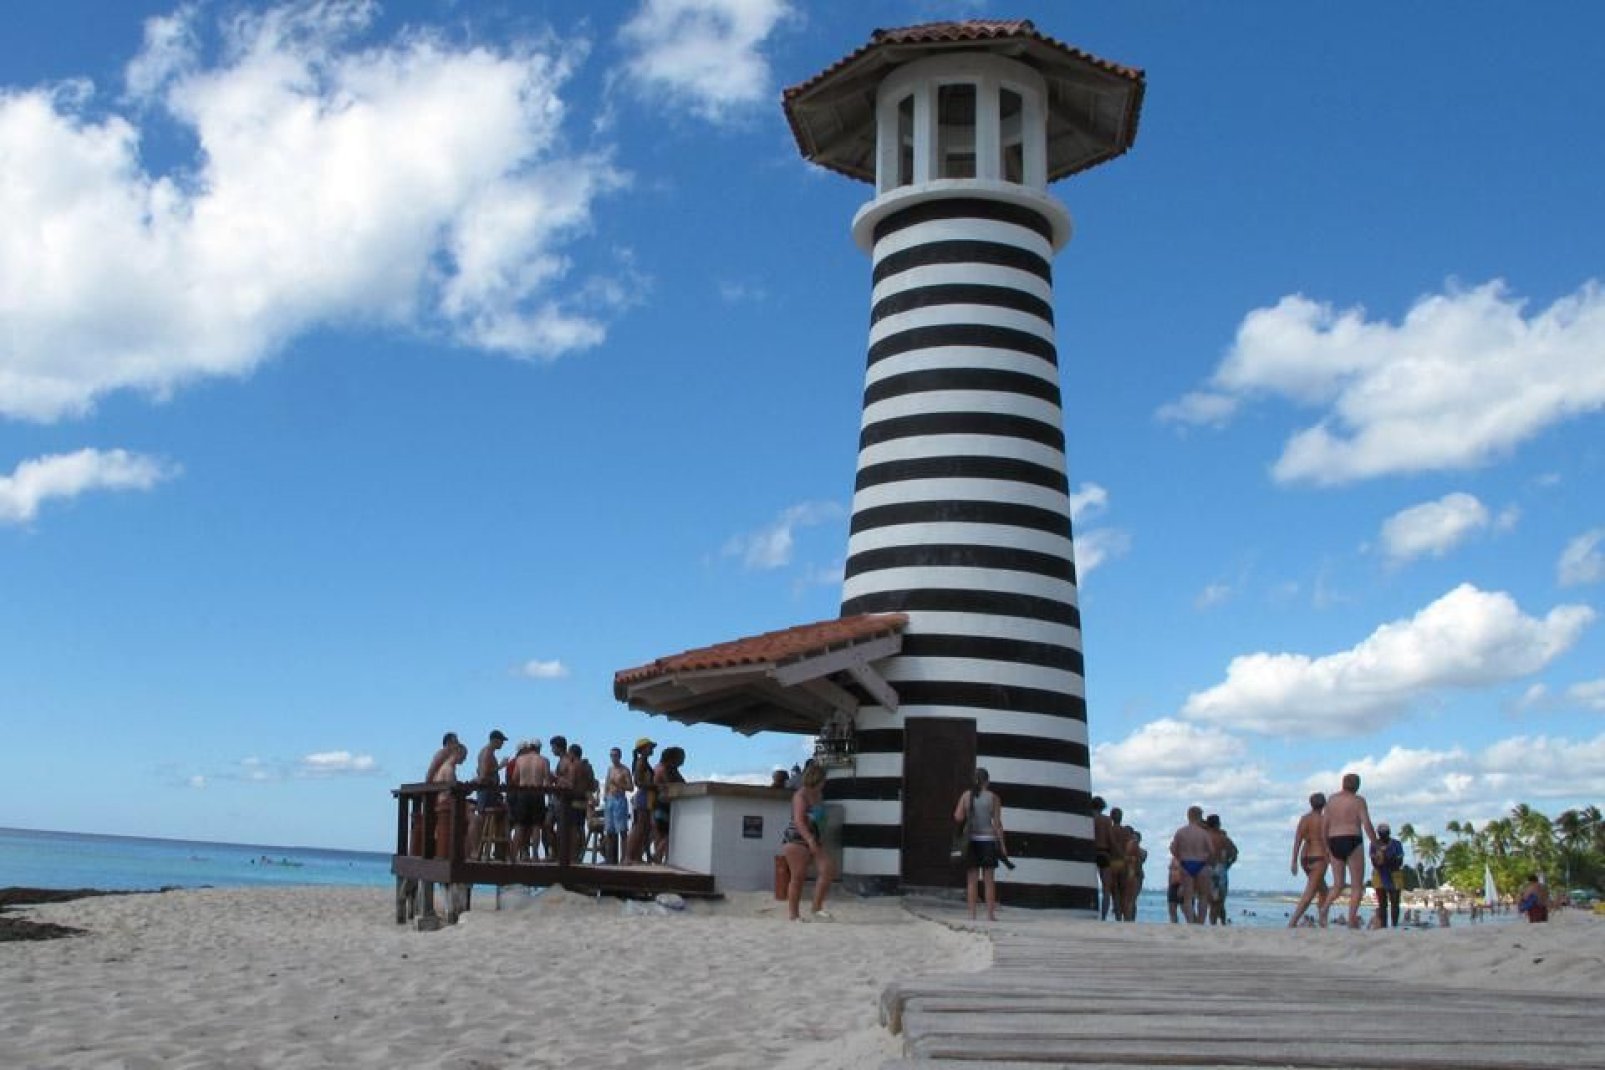 Der Leuchtturm befindet sich am Strand des Hotels Iberostar Hacienda Dominicus.